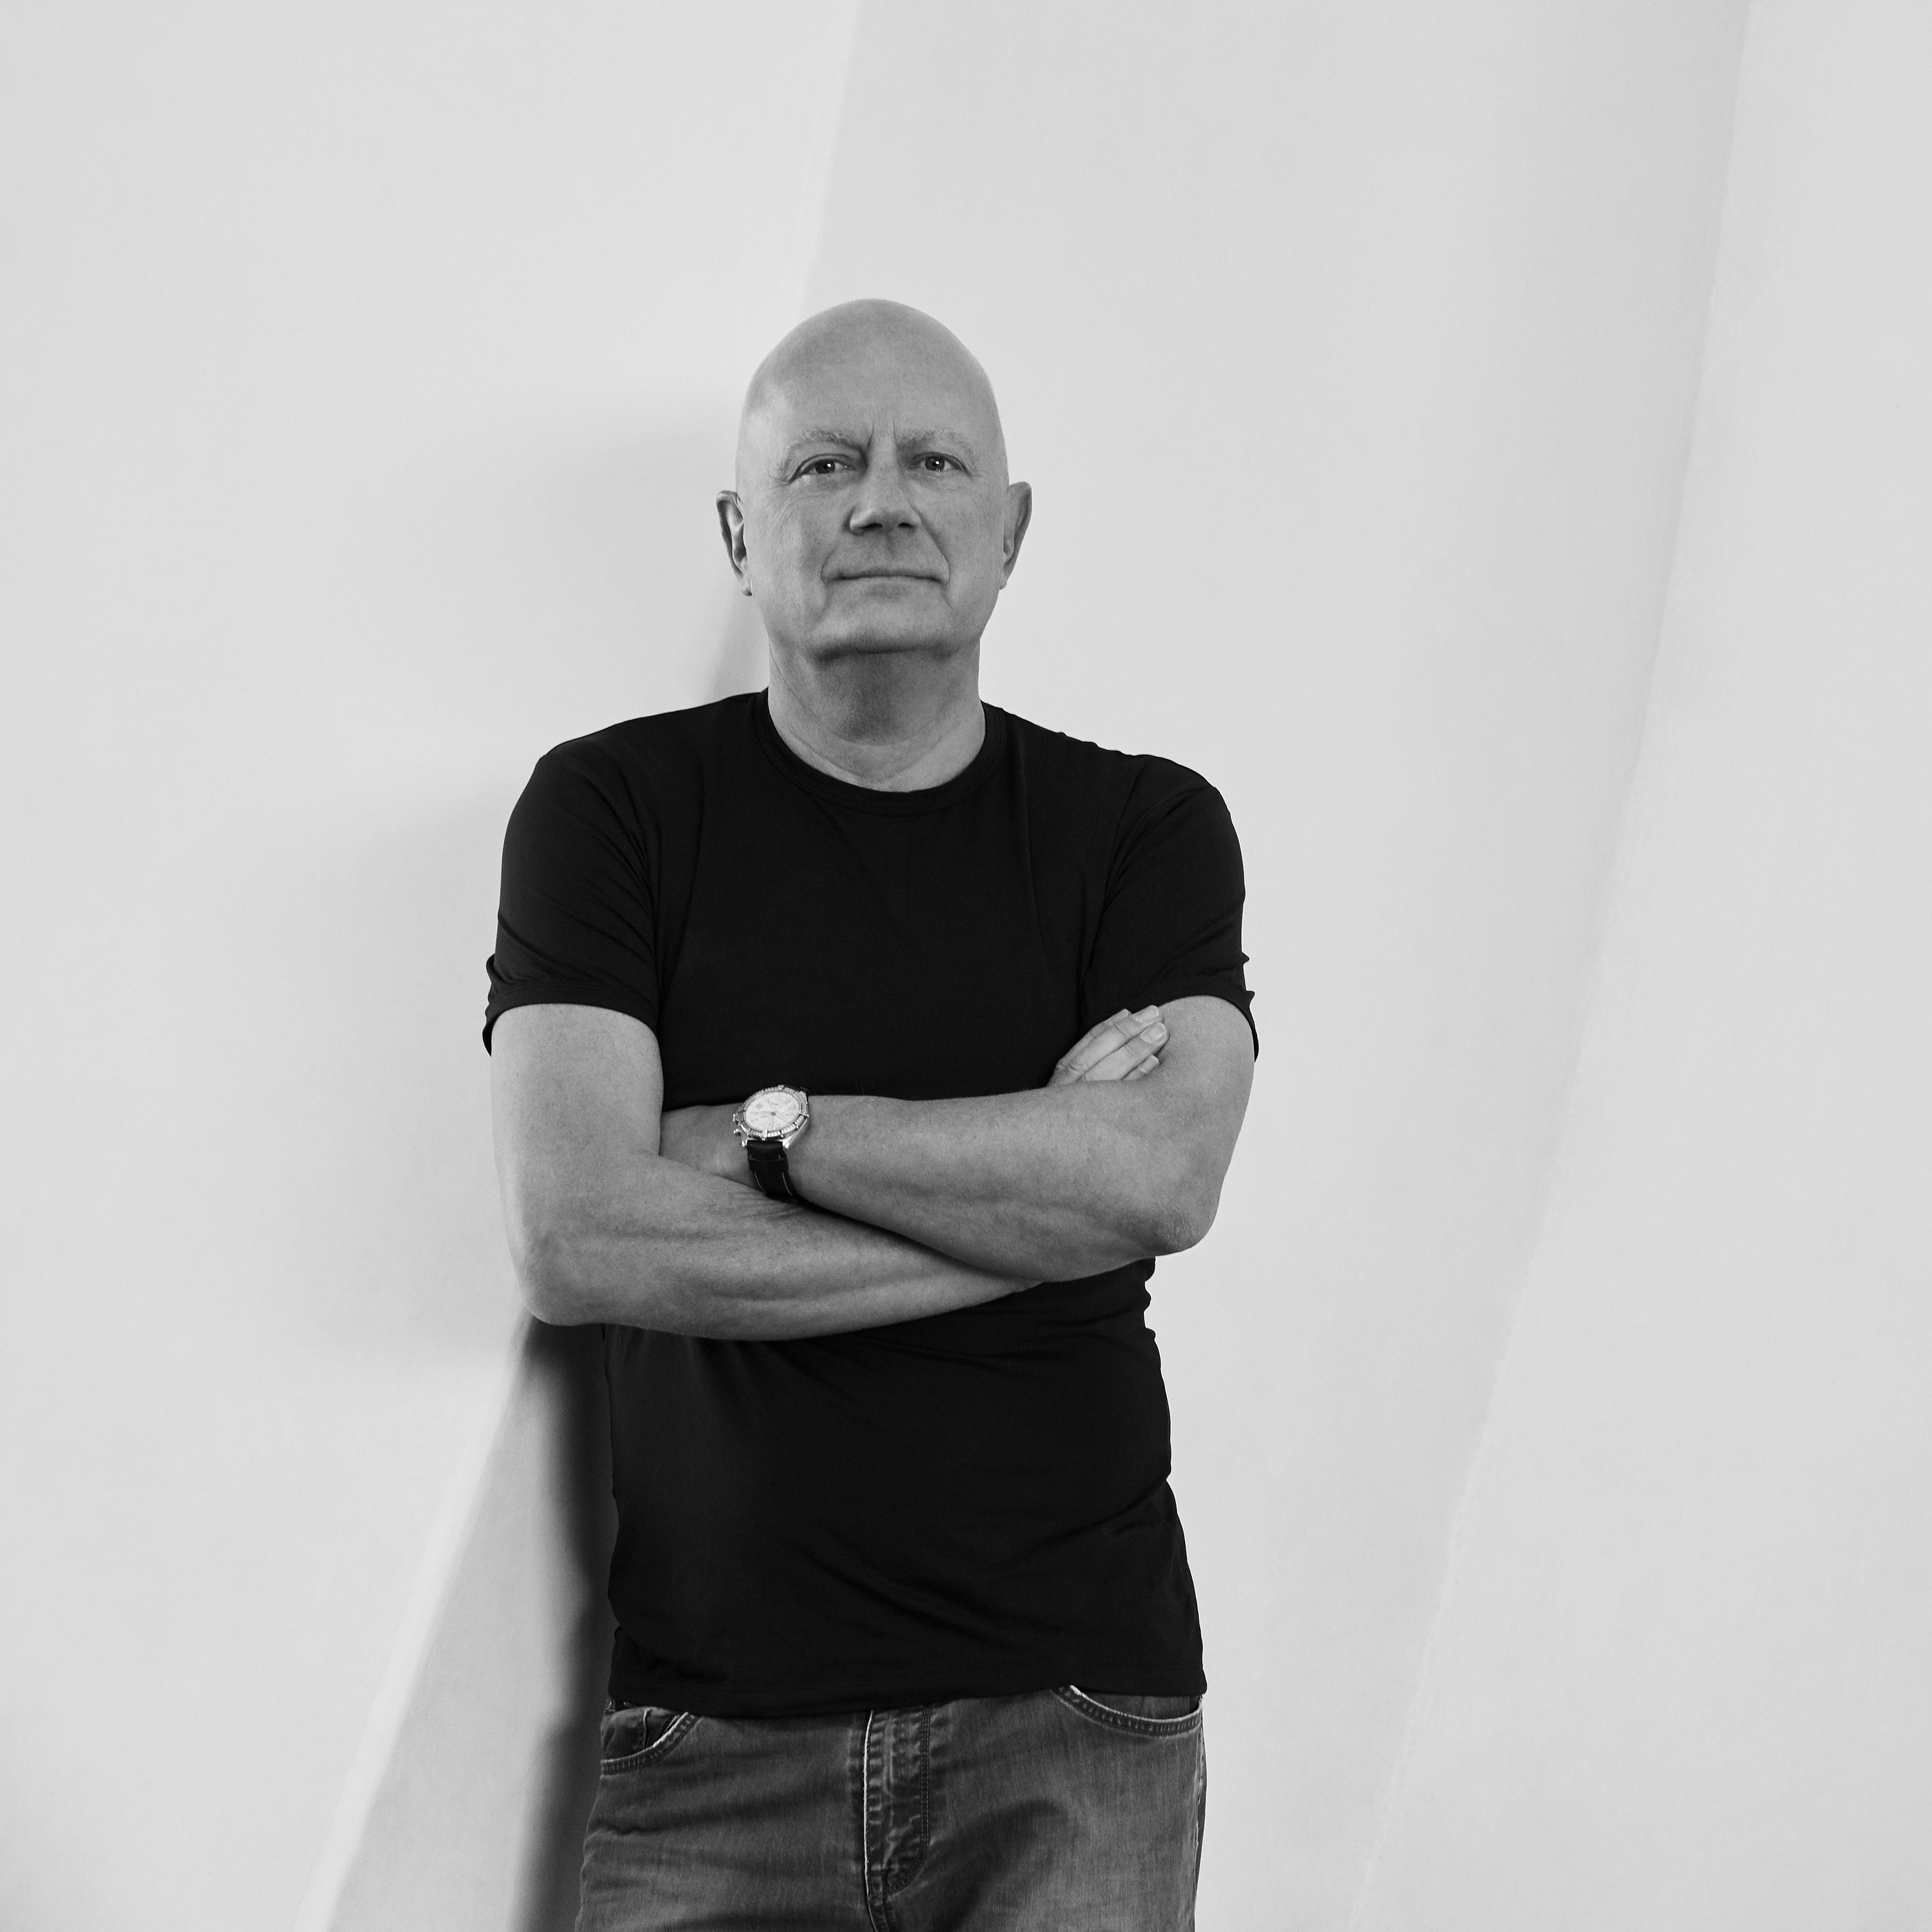 Formgivaren Morten Georgsen i svartvitt